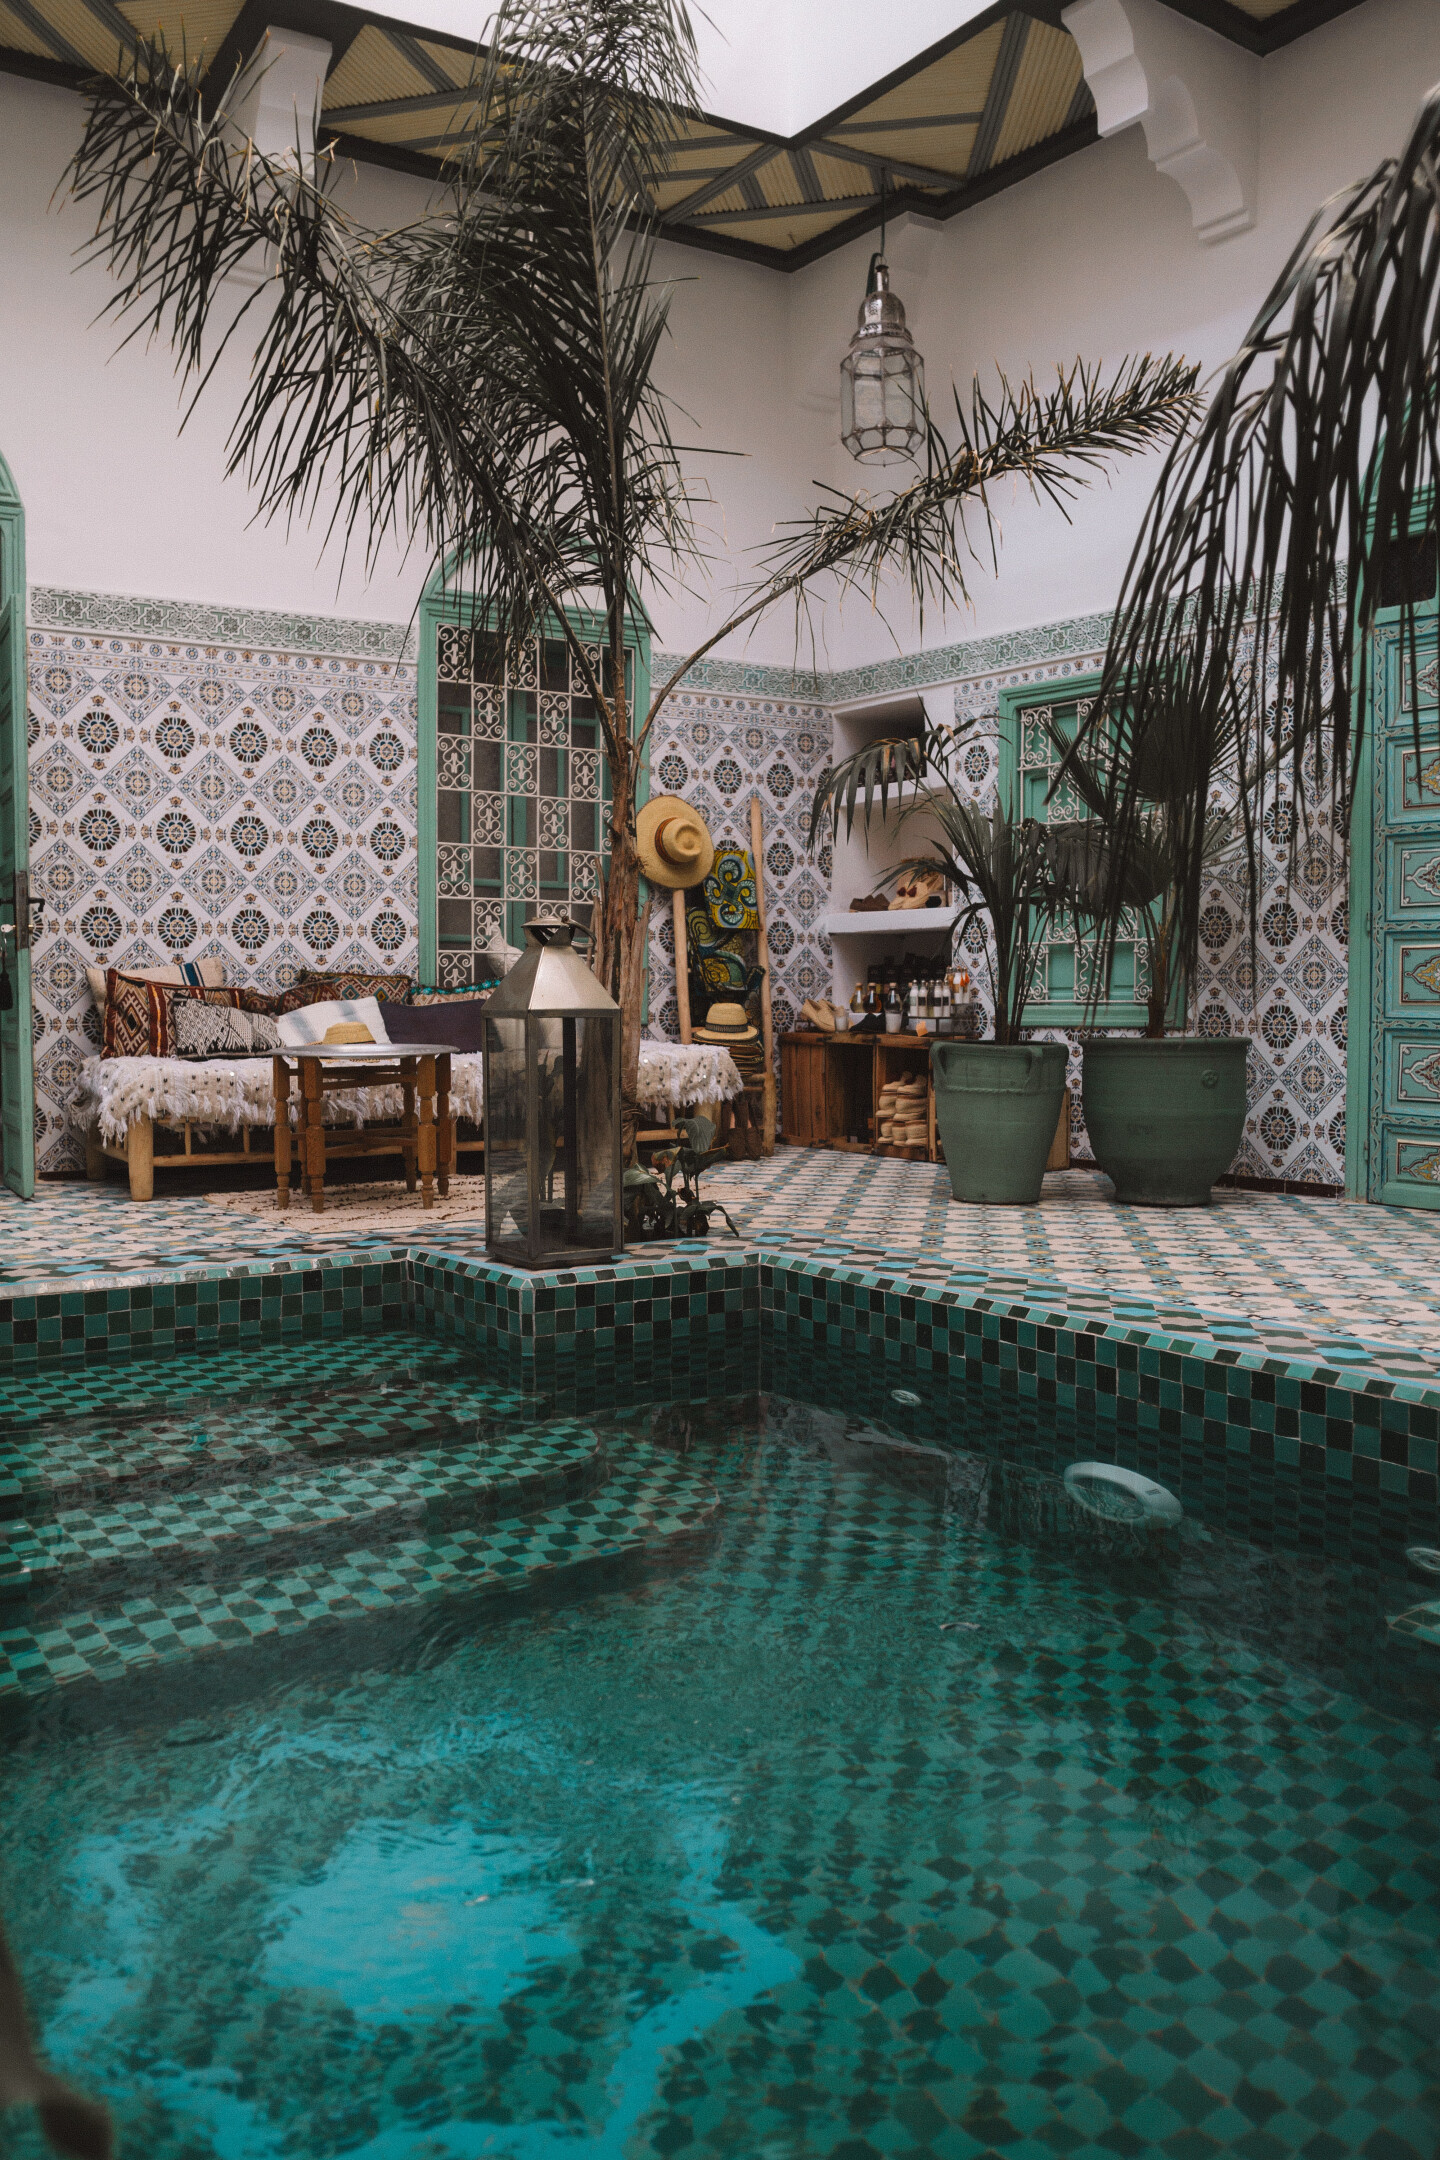 Storia e curiosità sul Marocco